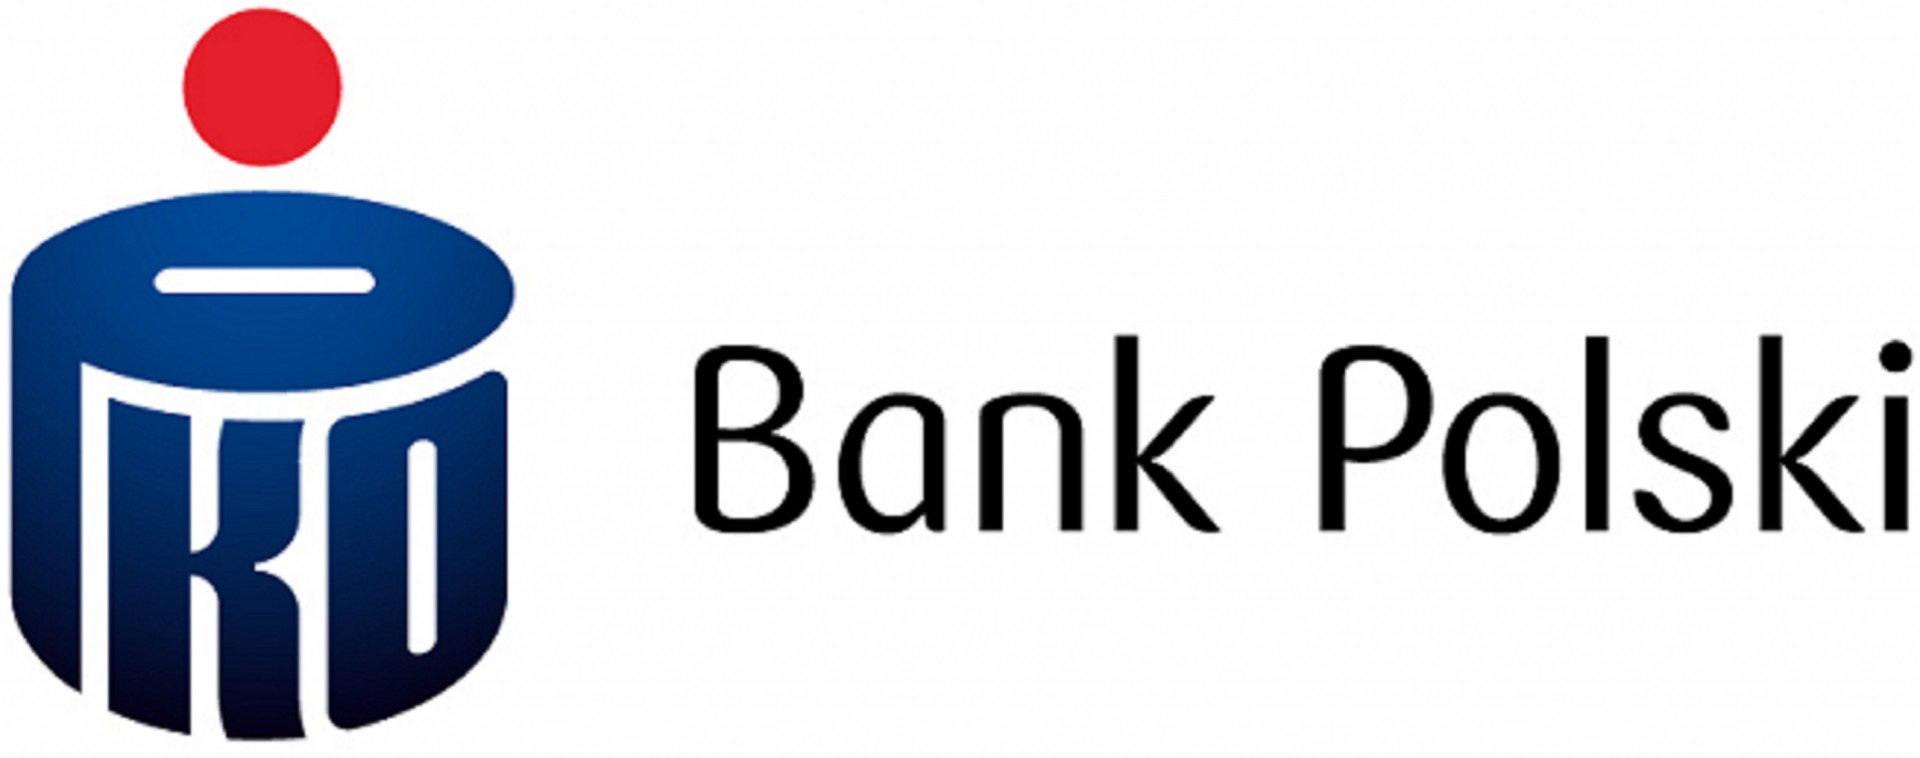 PKO Bank Polski S.A. logo